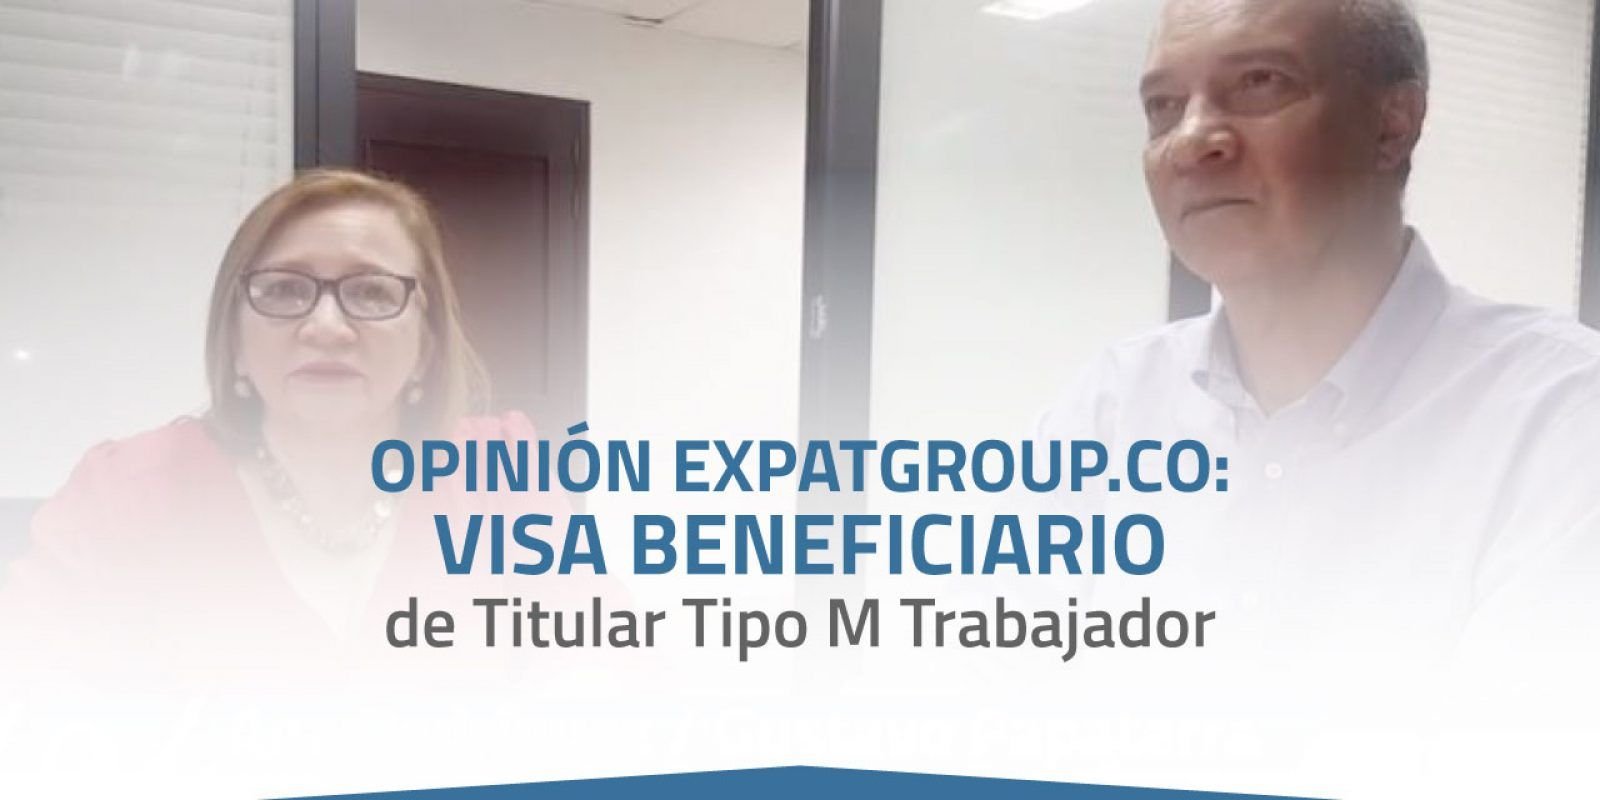 Opinión Expatgroup.co - Visa Beneficiario de Titular Tipo M Trabajador